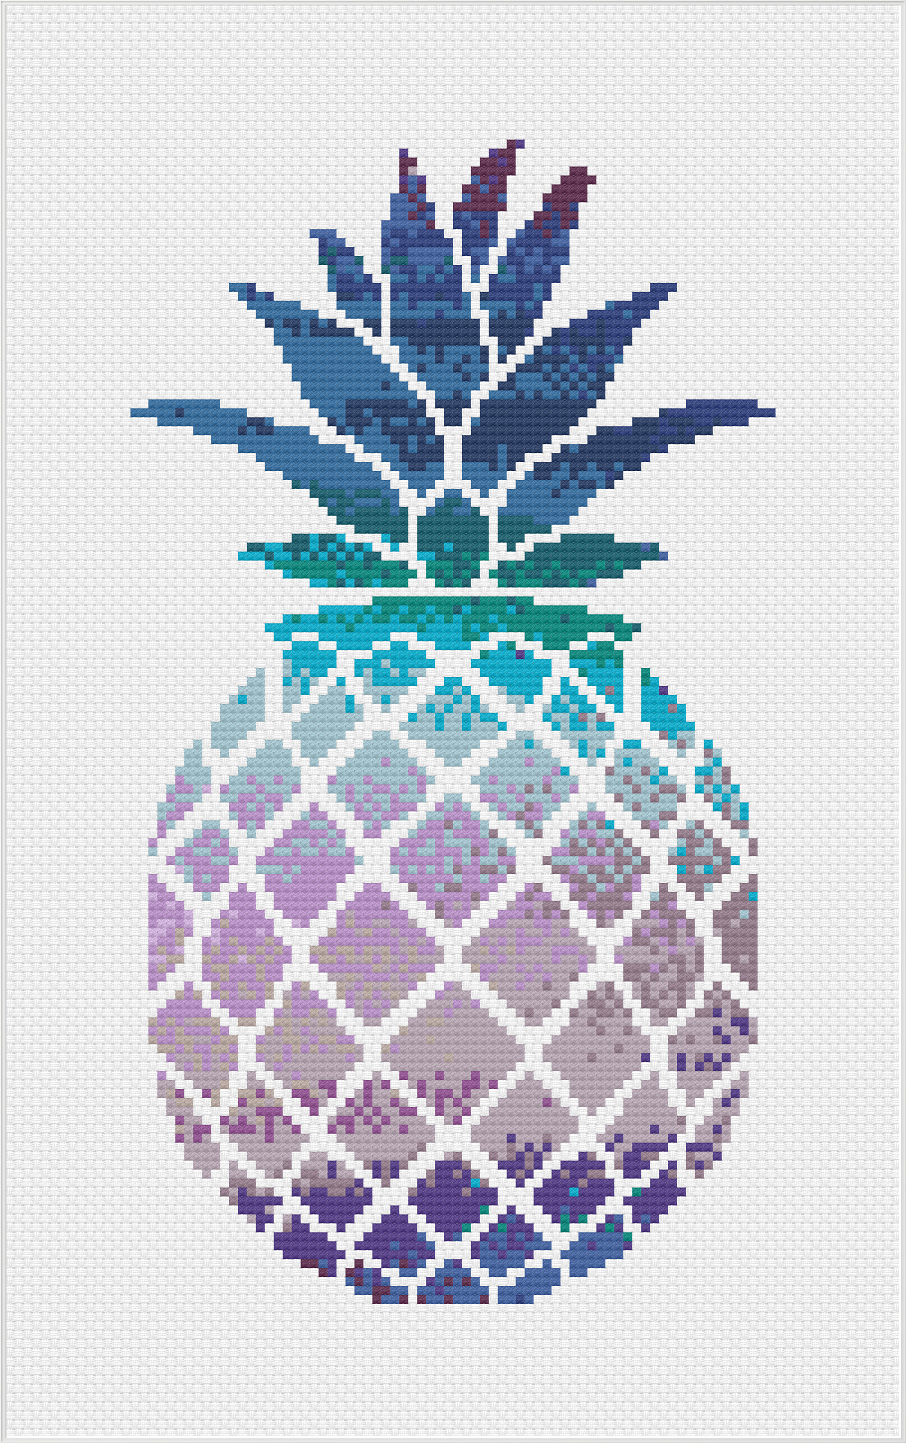 Watercolour Pineapple Cross Stitch Pattern